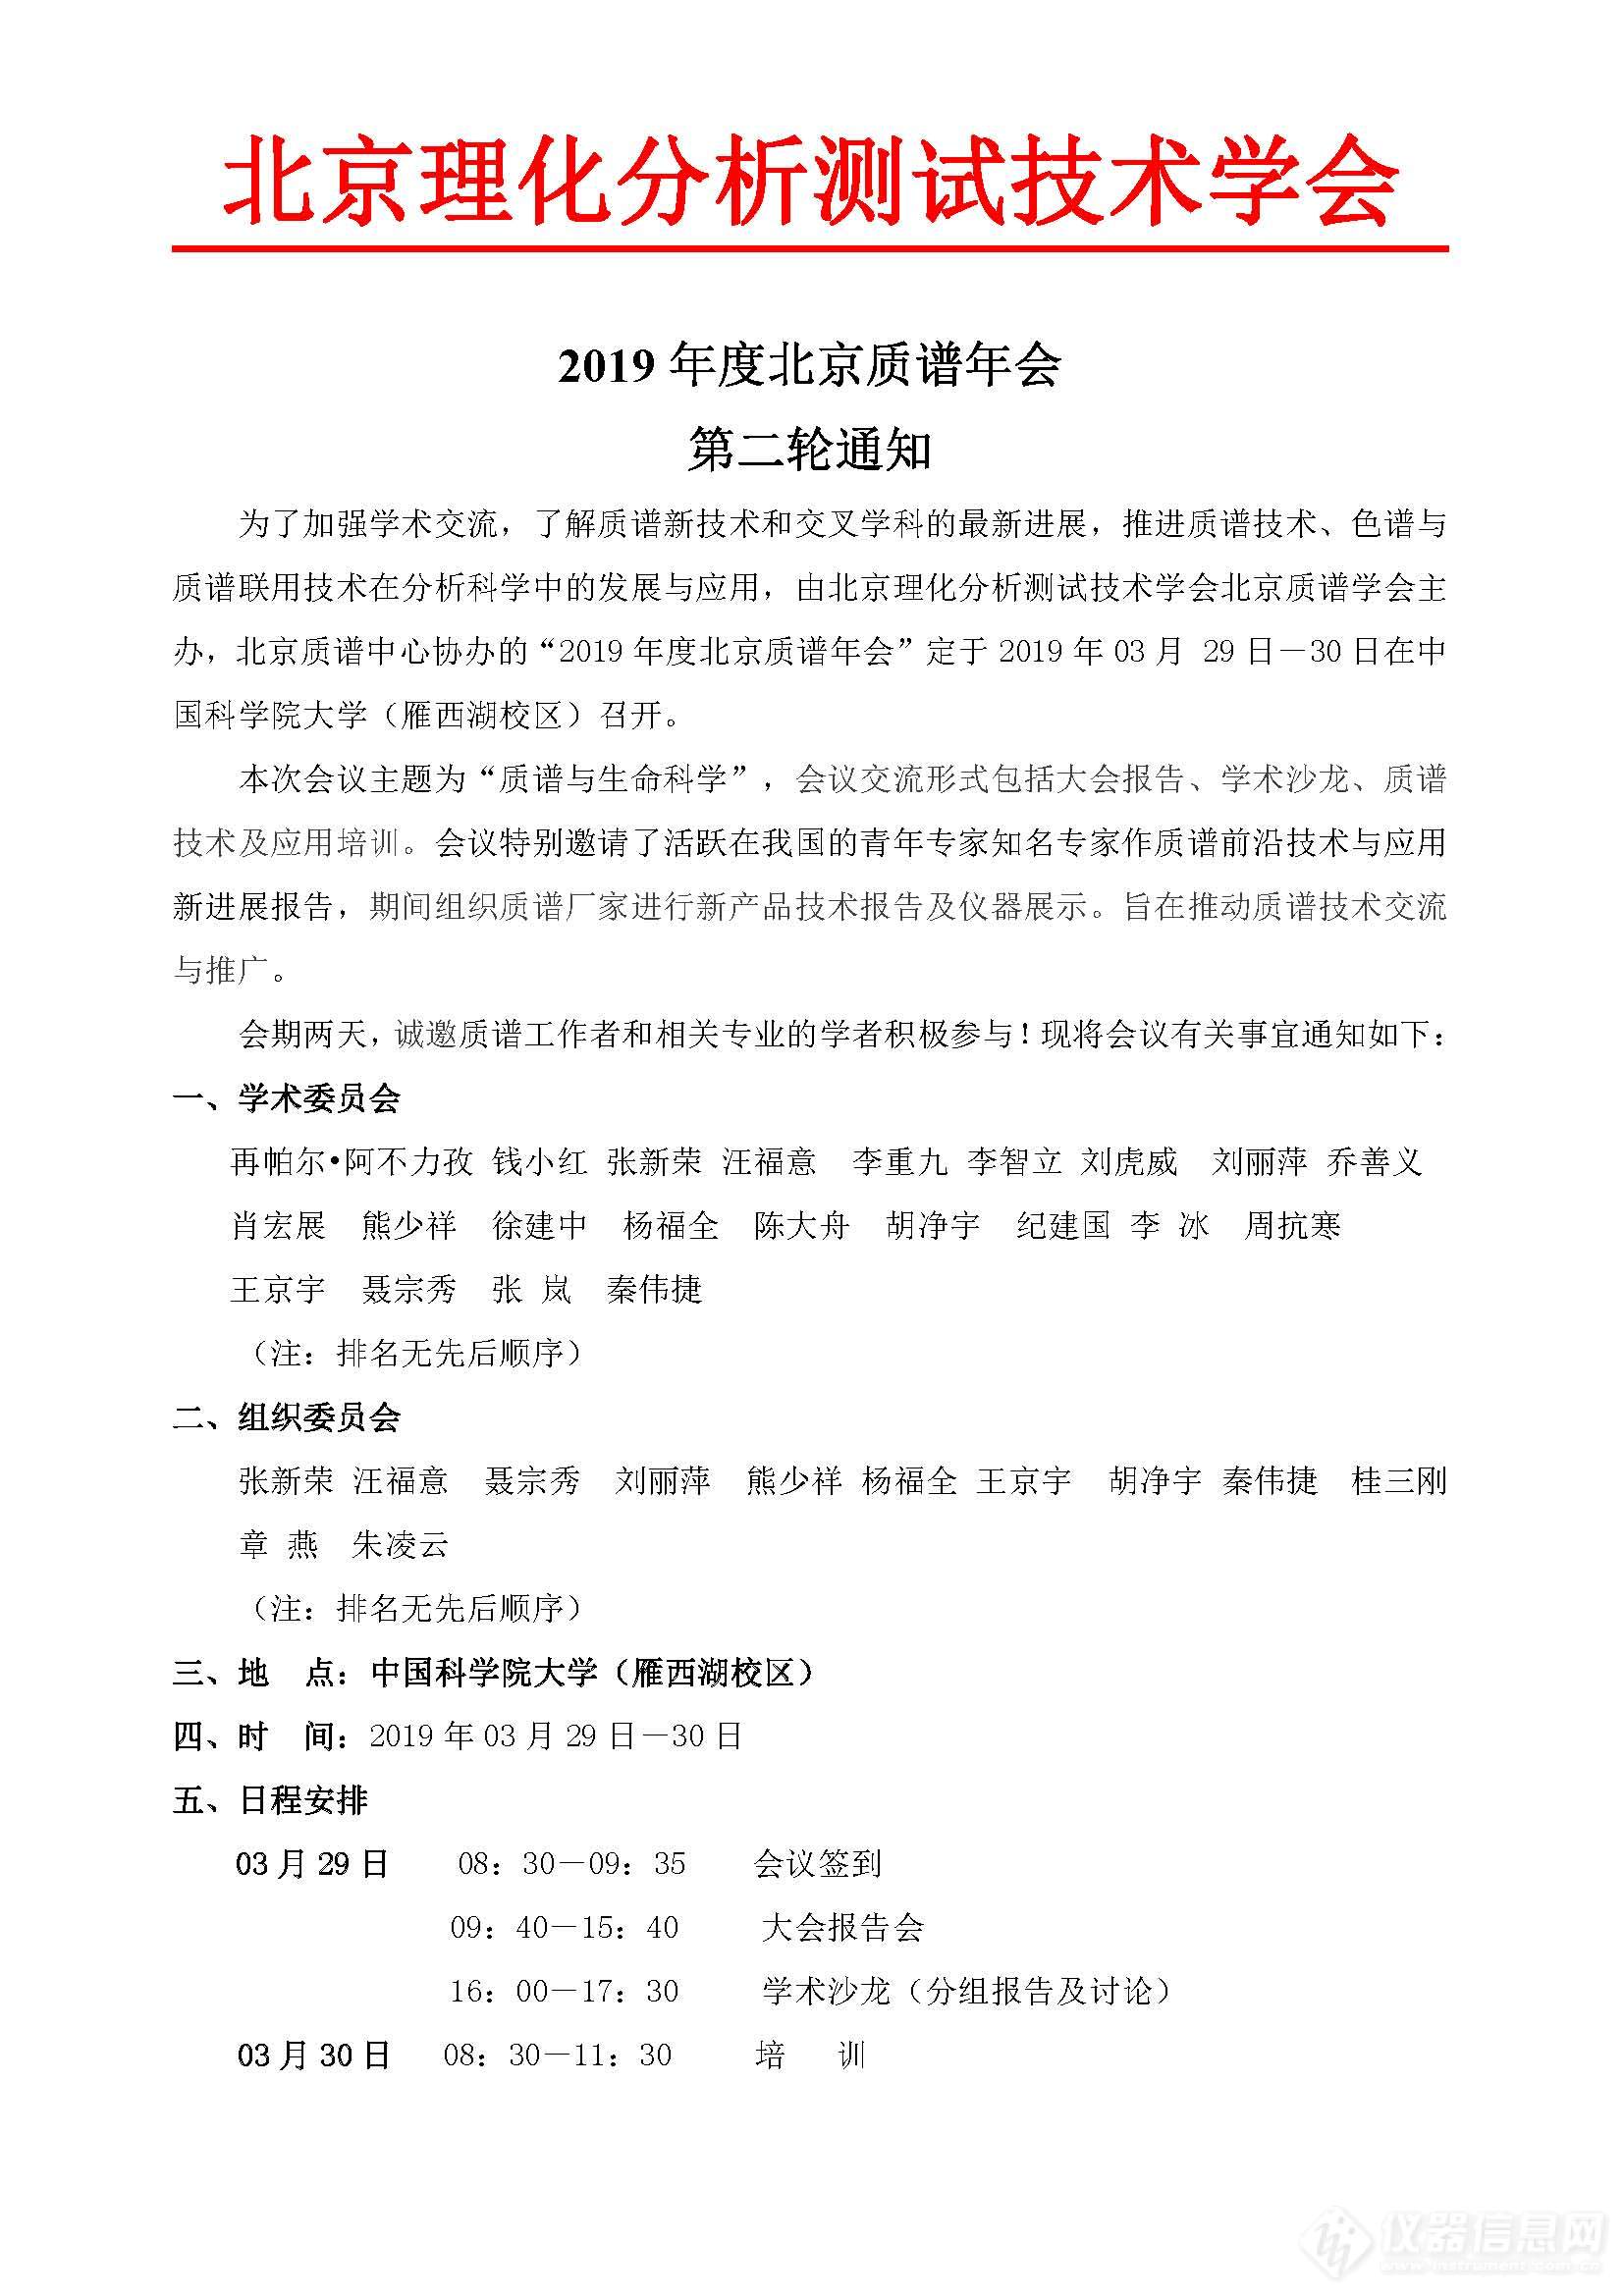 2019年度北京质谱年会二轮通知_页面_1.jpg